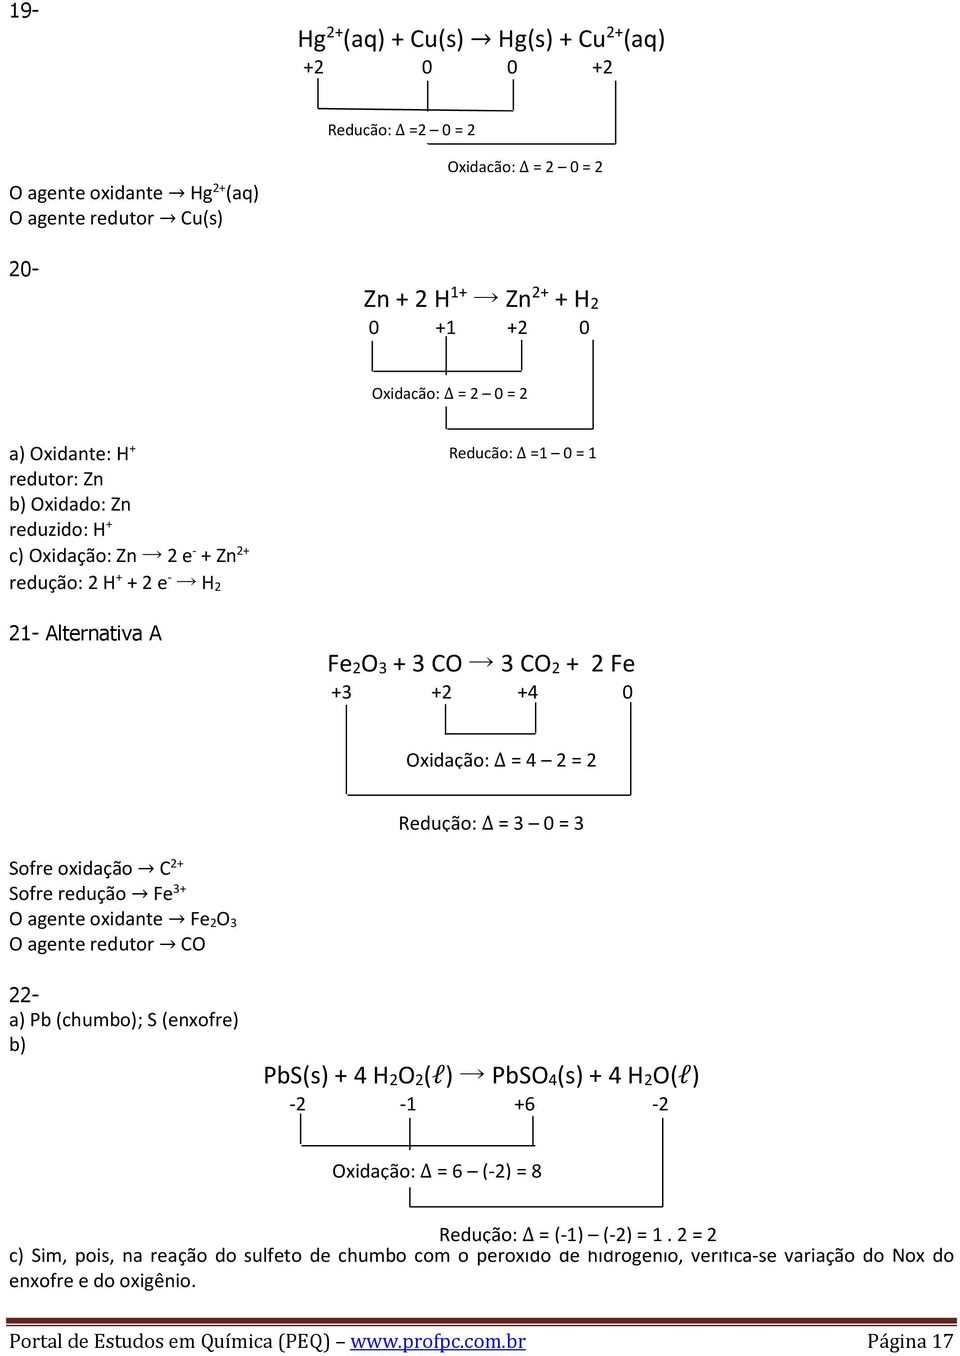 4 2 = 2 Redução: = 3 0 = 3 Sofre oxidação C 2+ Sofre redução Fe 3+ O agente oxidante Fe 2O 3 O agente redutor CO 22- a) Pb (chumbo); S (enxofre) b) PbS(s) + 4 H2O2(l) PbSO4(s) + 4 H2O(l) -2-1 +6-2